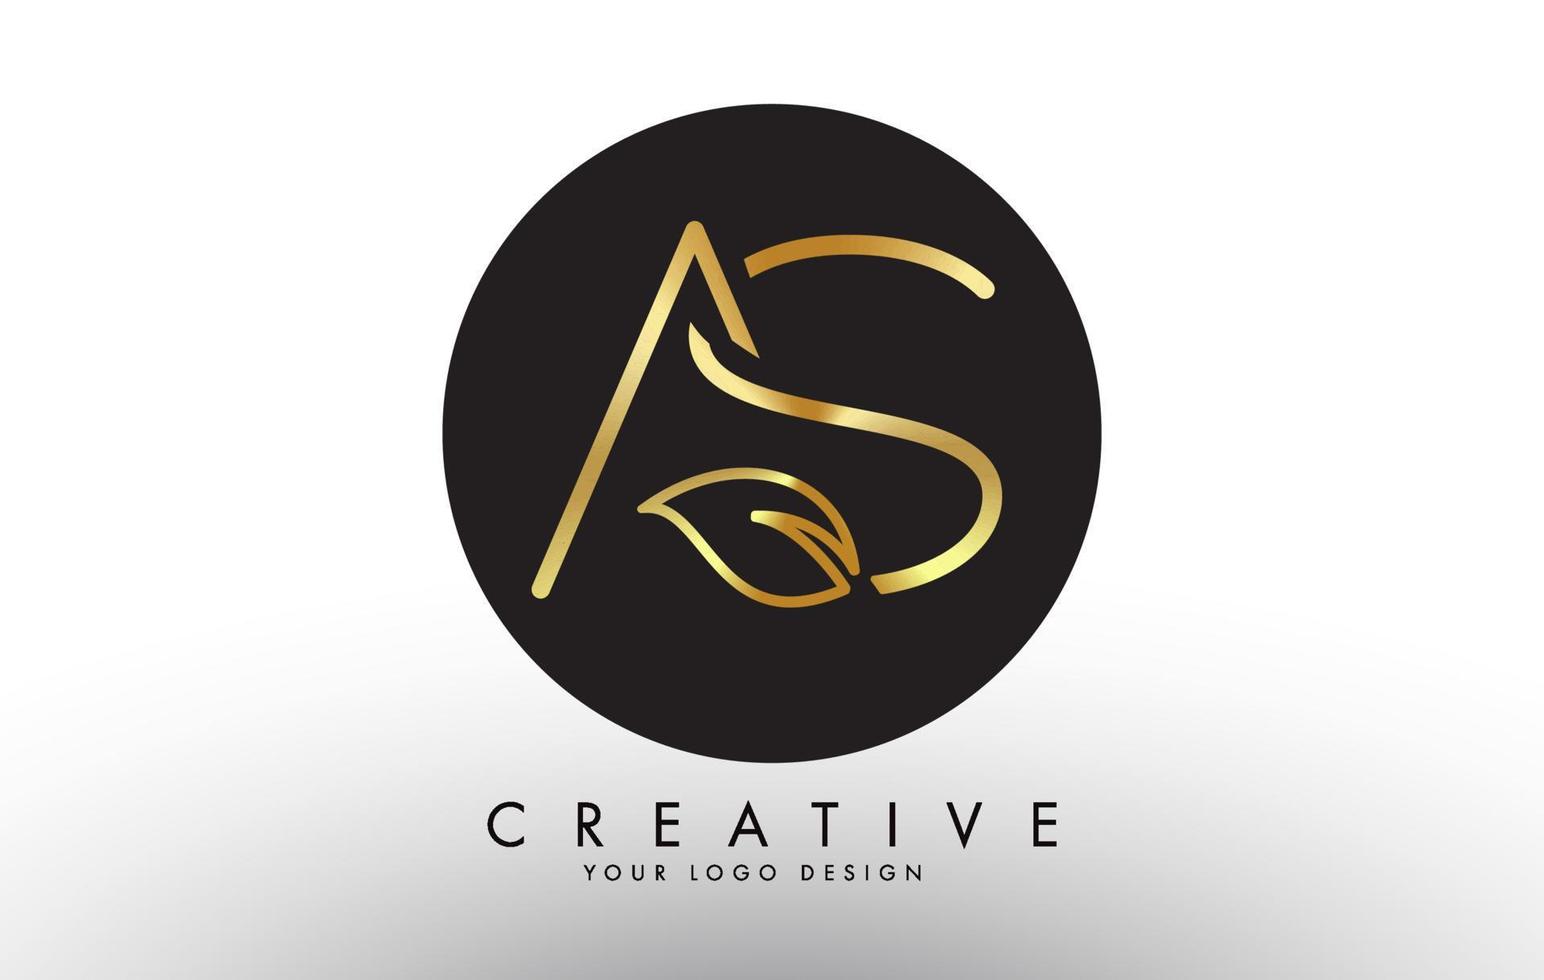 Letras de hojas doradas como y swoosh creativo y diseño de logotipo de círculo negro. vector